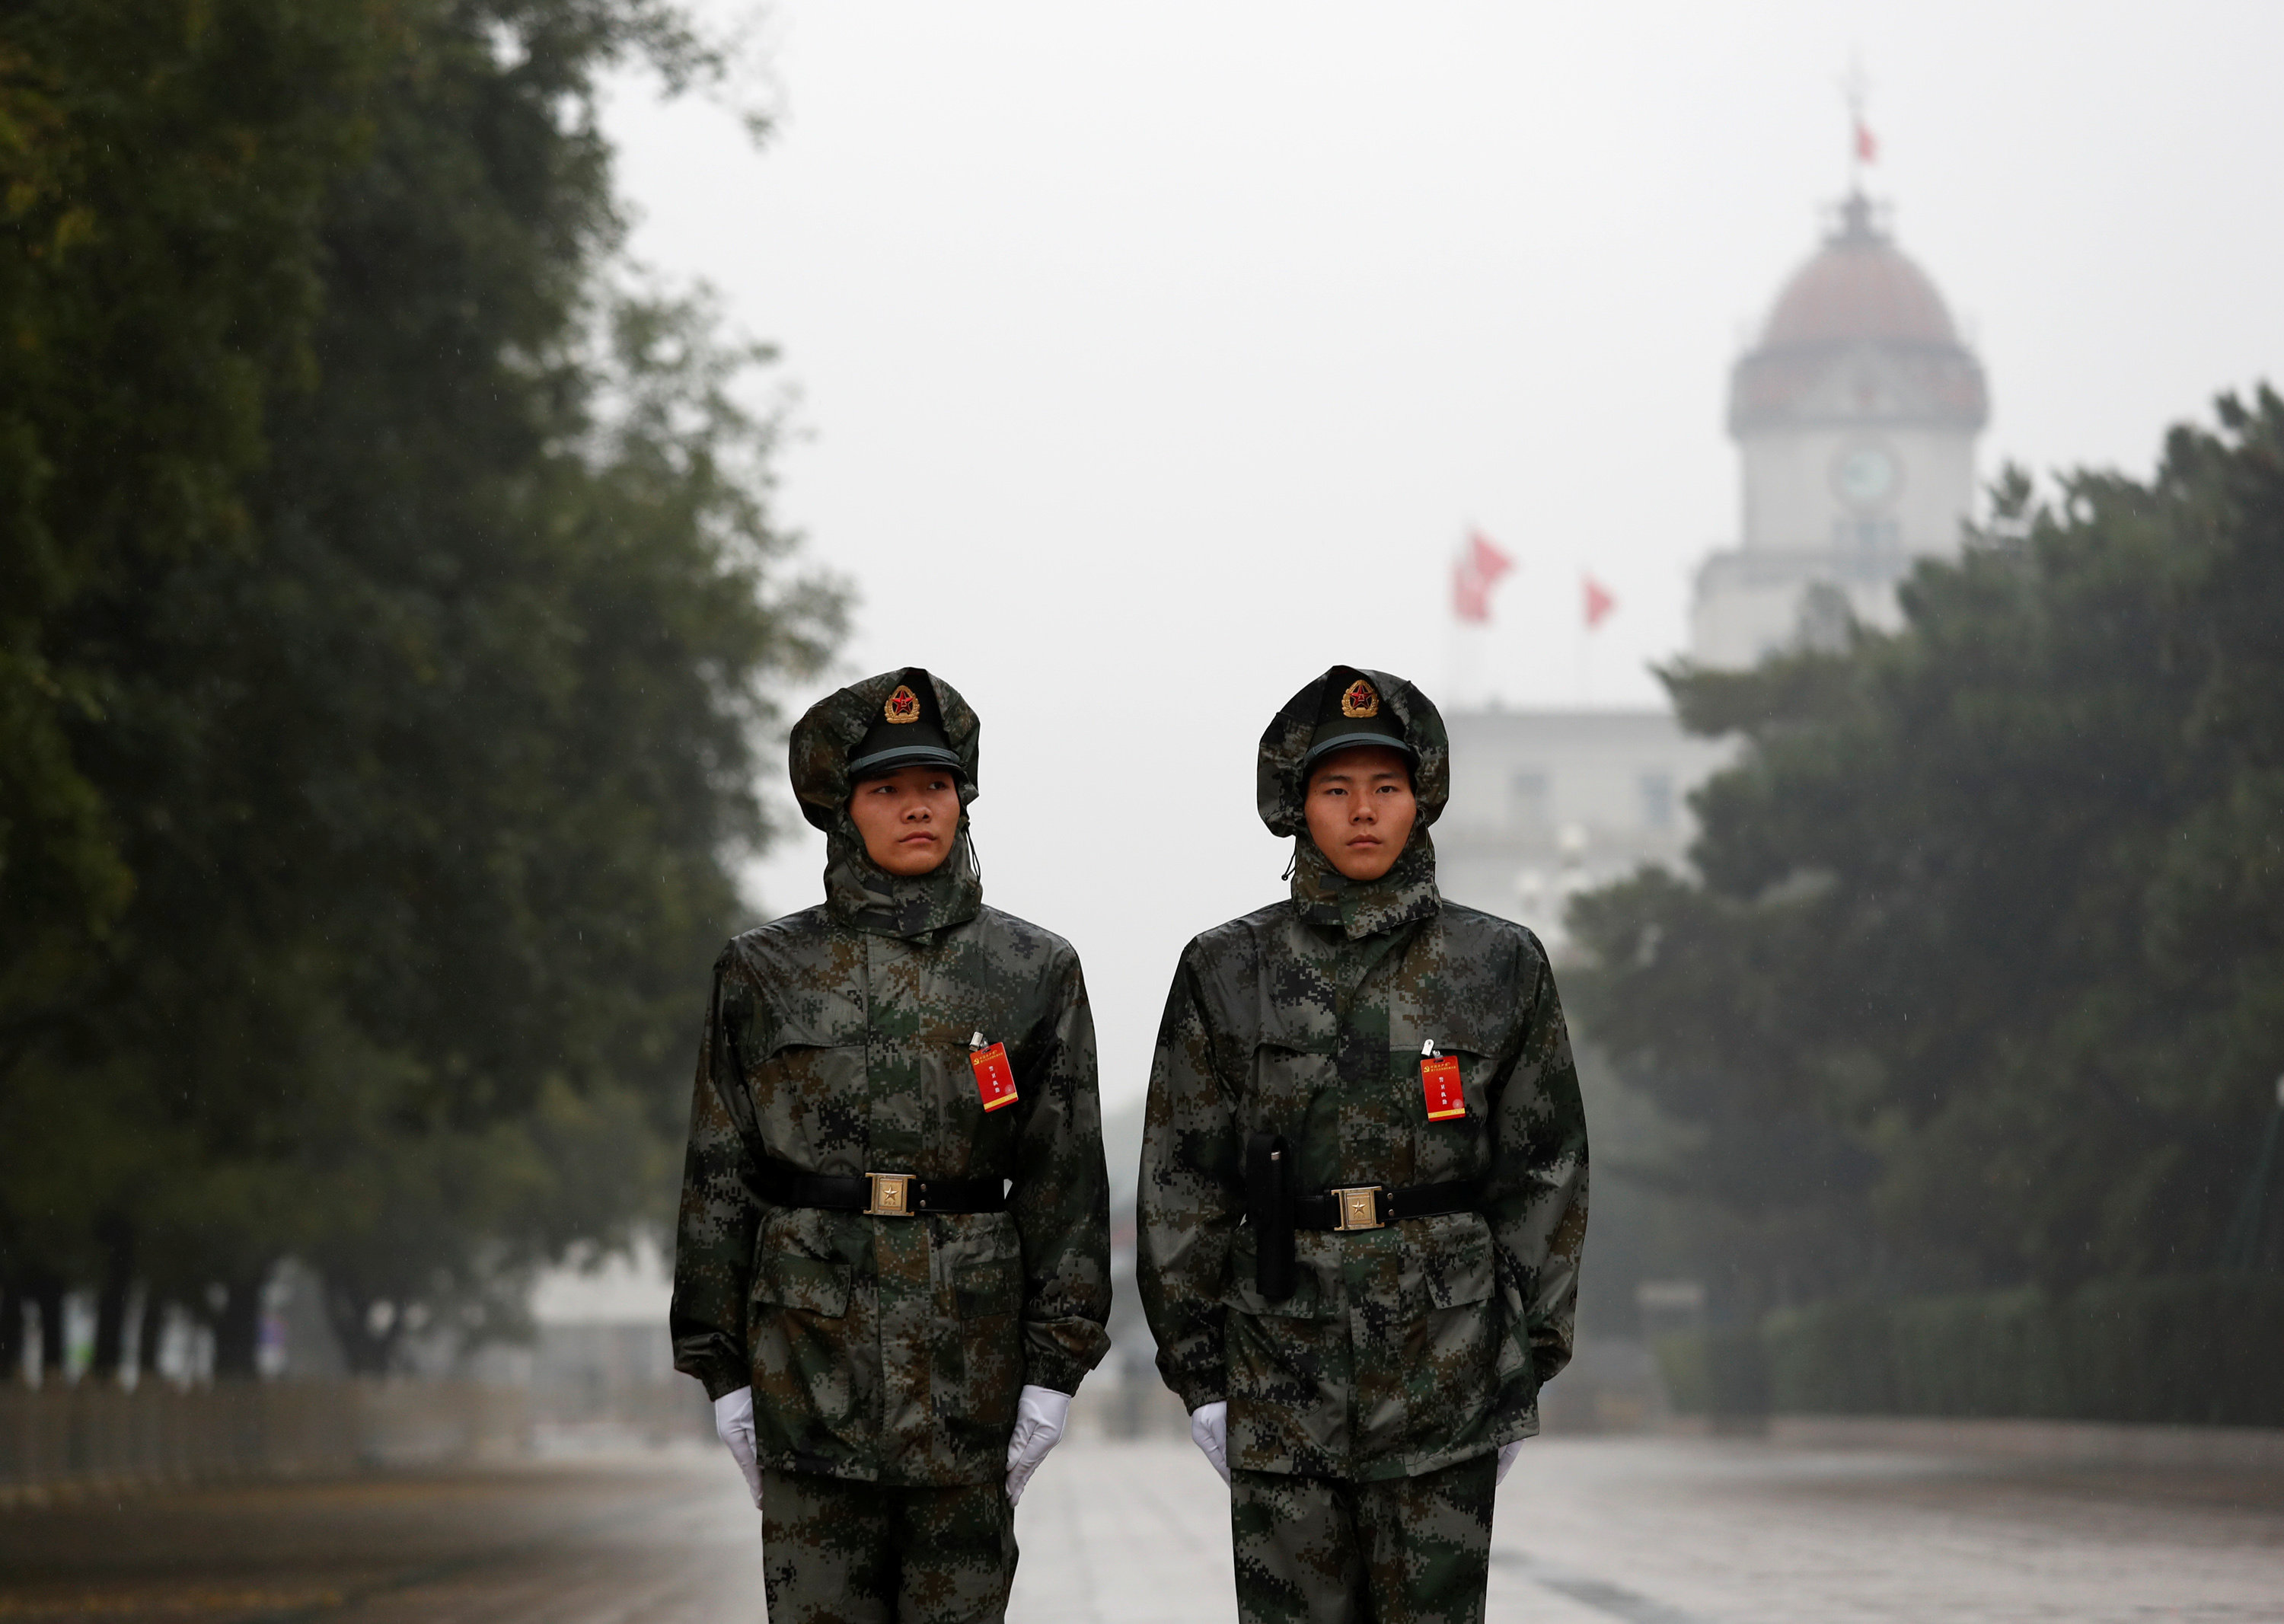 أفراد الأمن خلال تأمين قاعة الشعب الكبرى بالصين